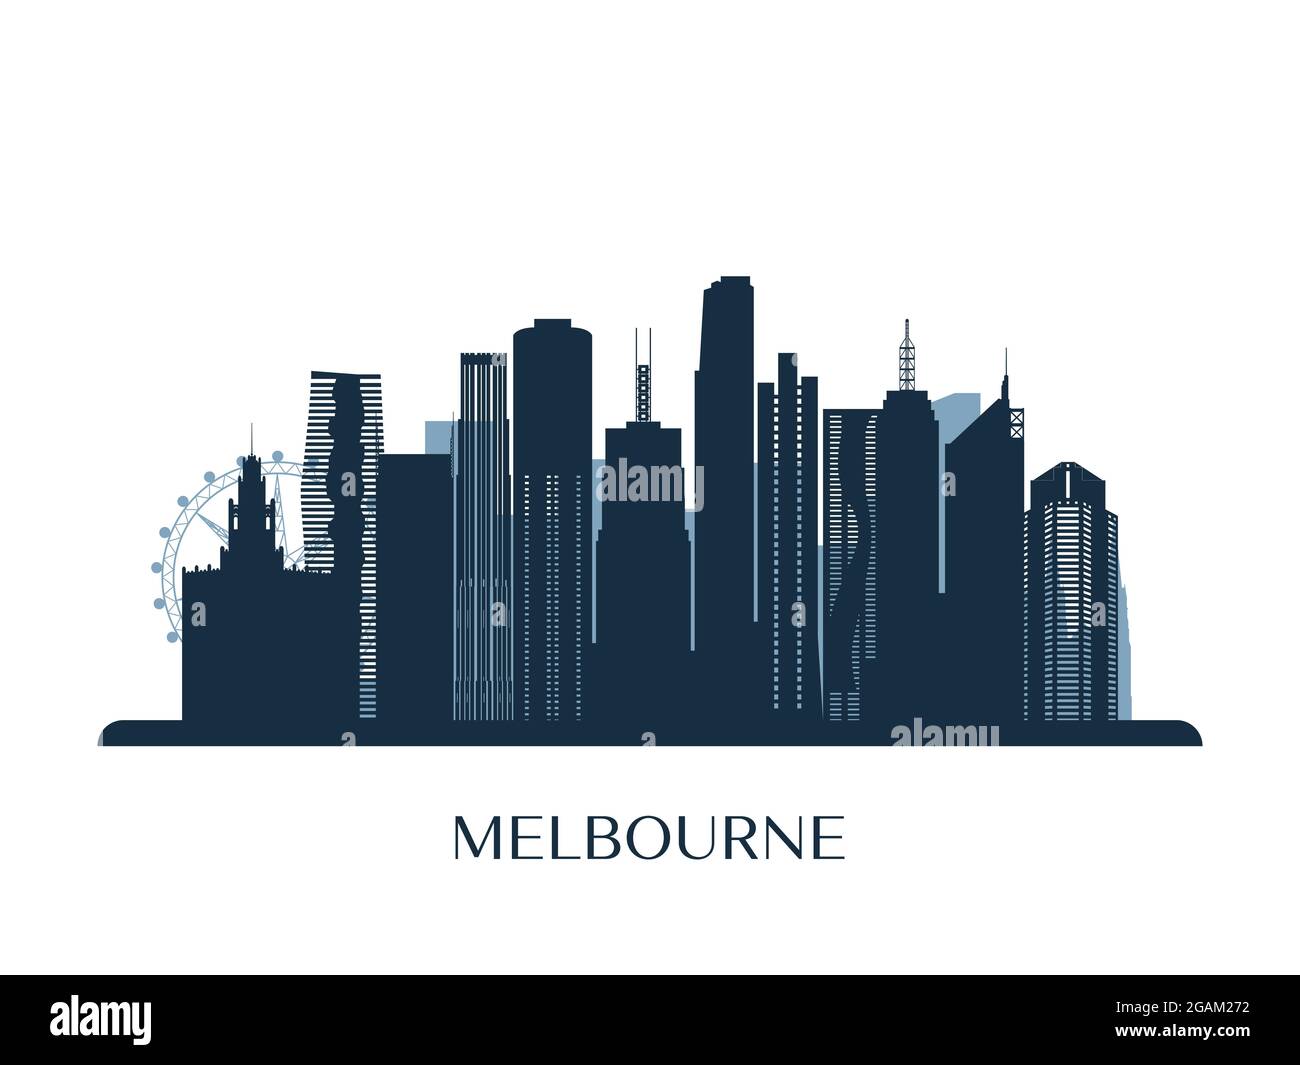 Melbrourne skyline, monochrome silhouette. Vector illustration. Stock Vector